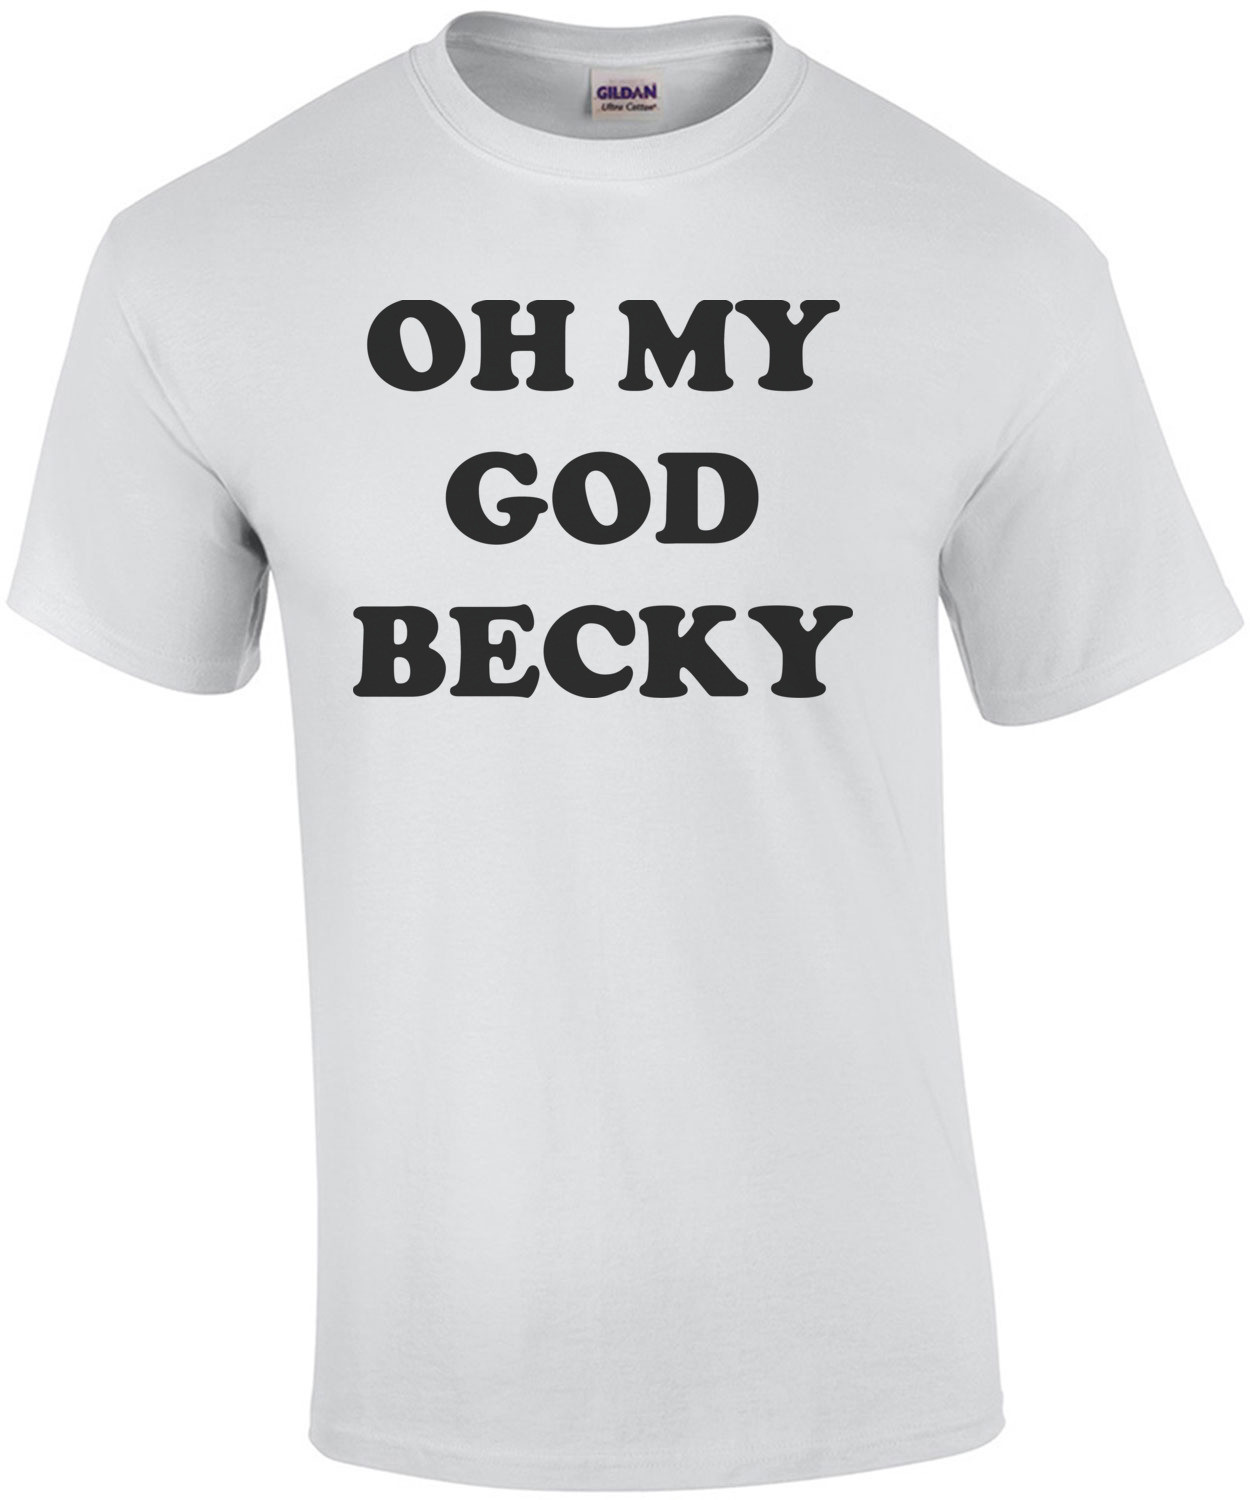 OH MY GOD BECKY T-Shirt